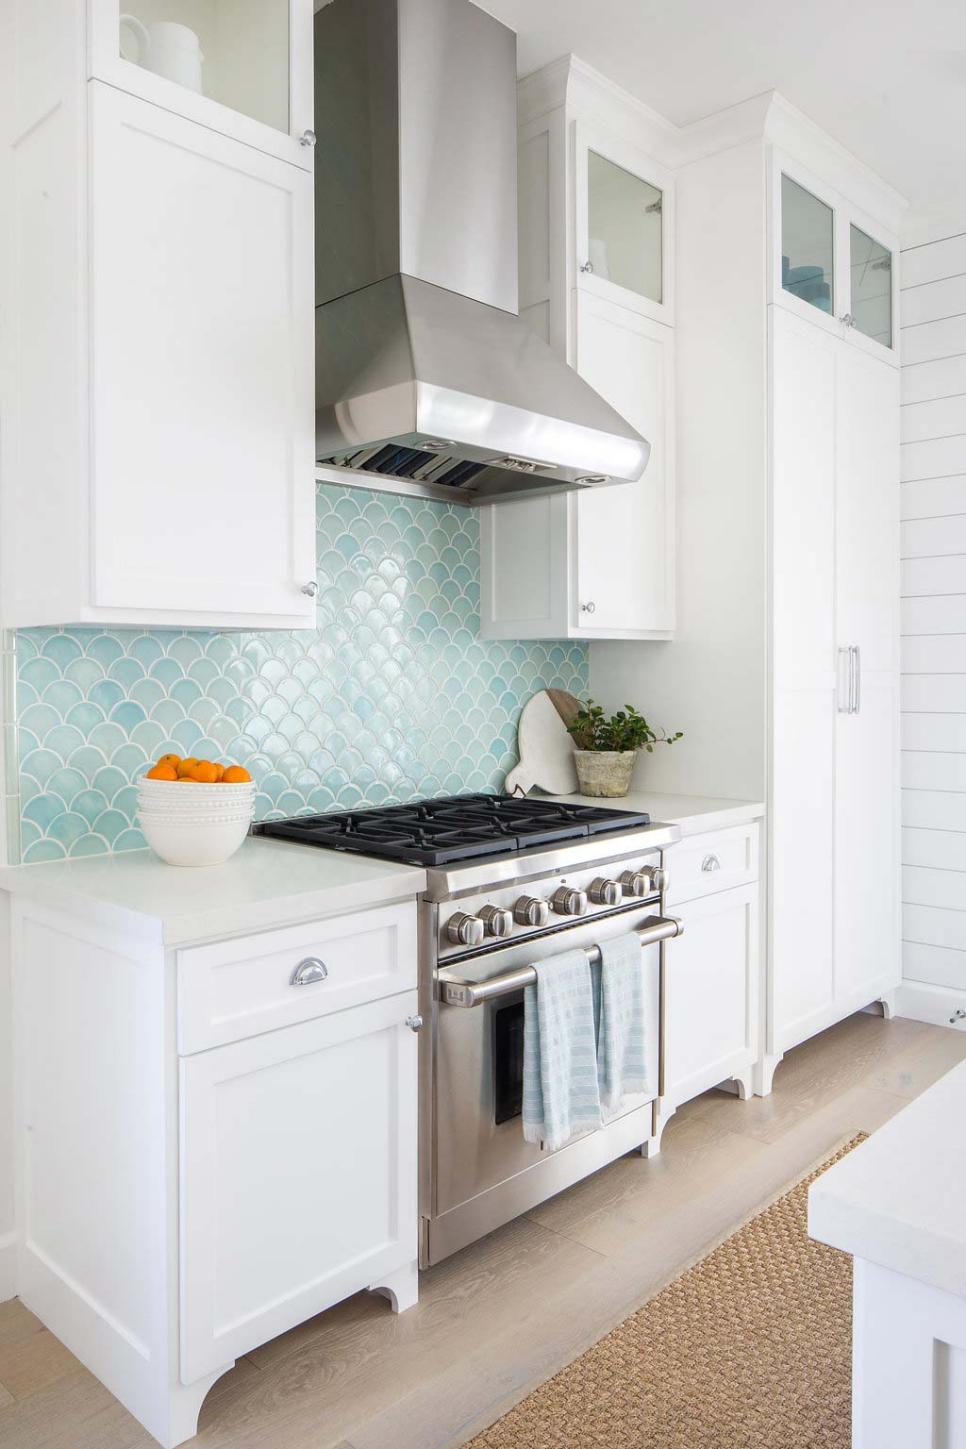 White Transitional Kitchen With Blue Backsplash | HGTV